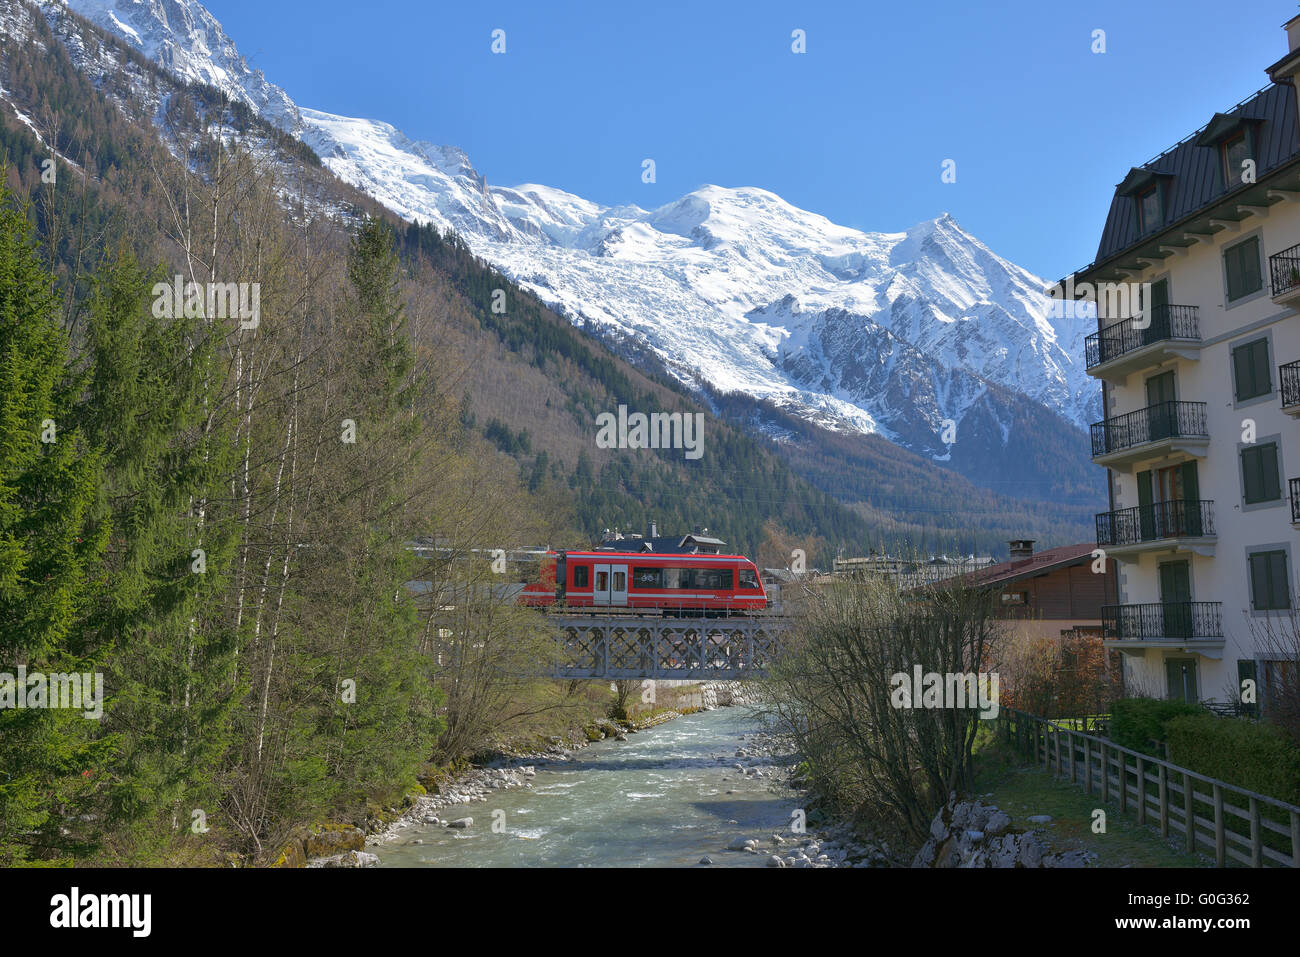 Touristenzug auf einer Schotterbrücke über den Fluss Arve und mit Mont-Blanc als Hintergrund. Chamonix, Haute-Savoie, Auvergne-Rhône-Alpes, Frankreich. Stockfoto